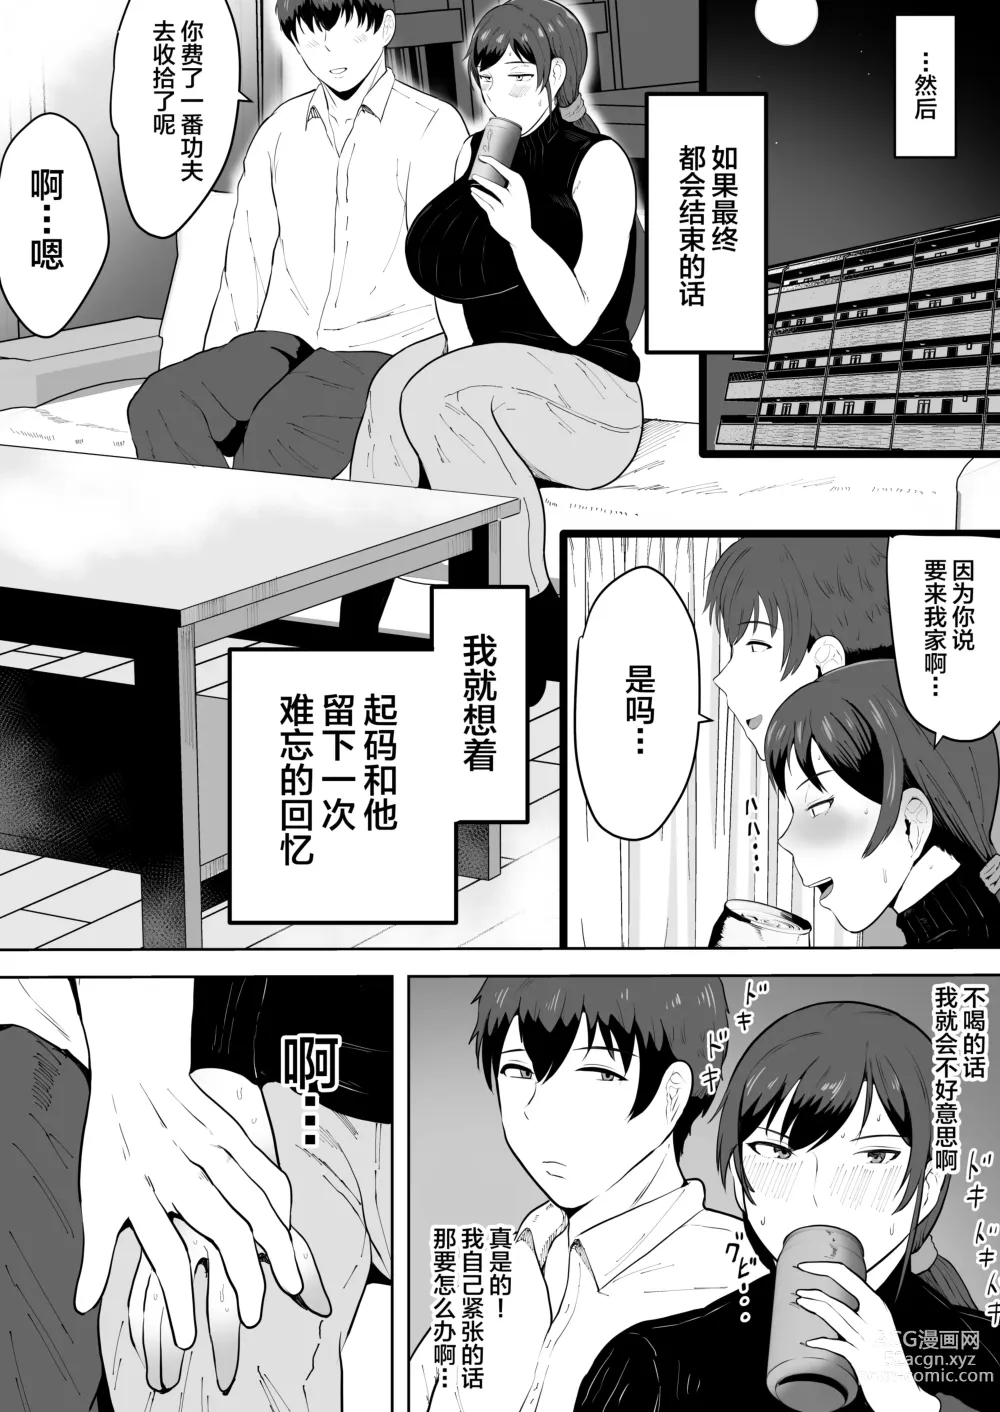 Page 14 of doujinshi Hoken no Sensei Shinobu 37-sai